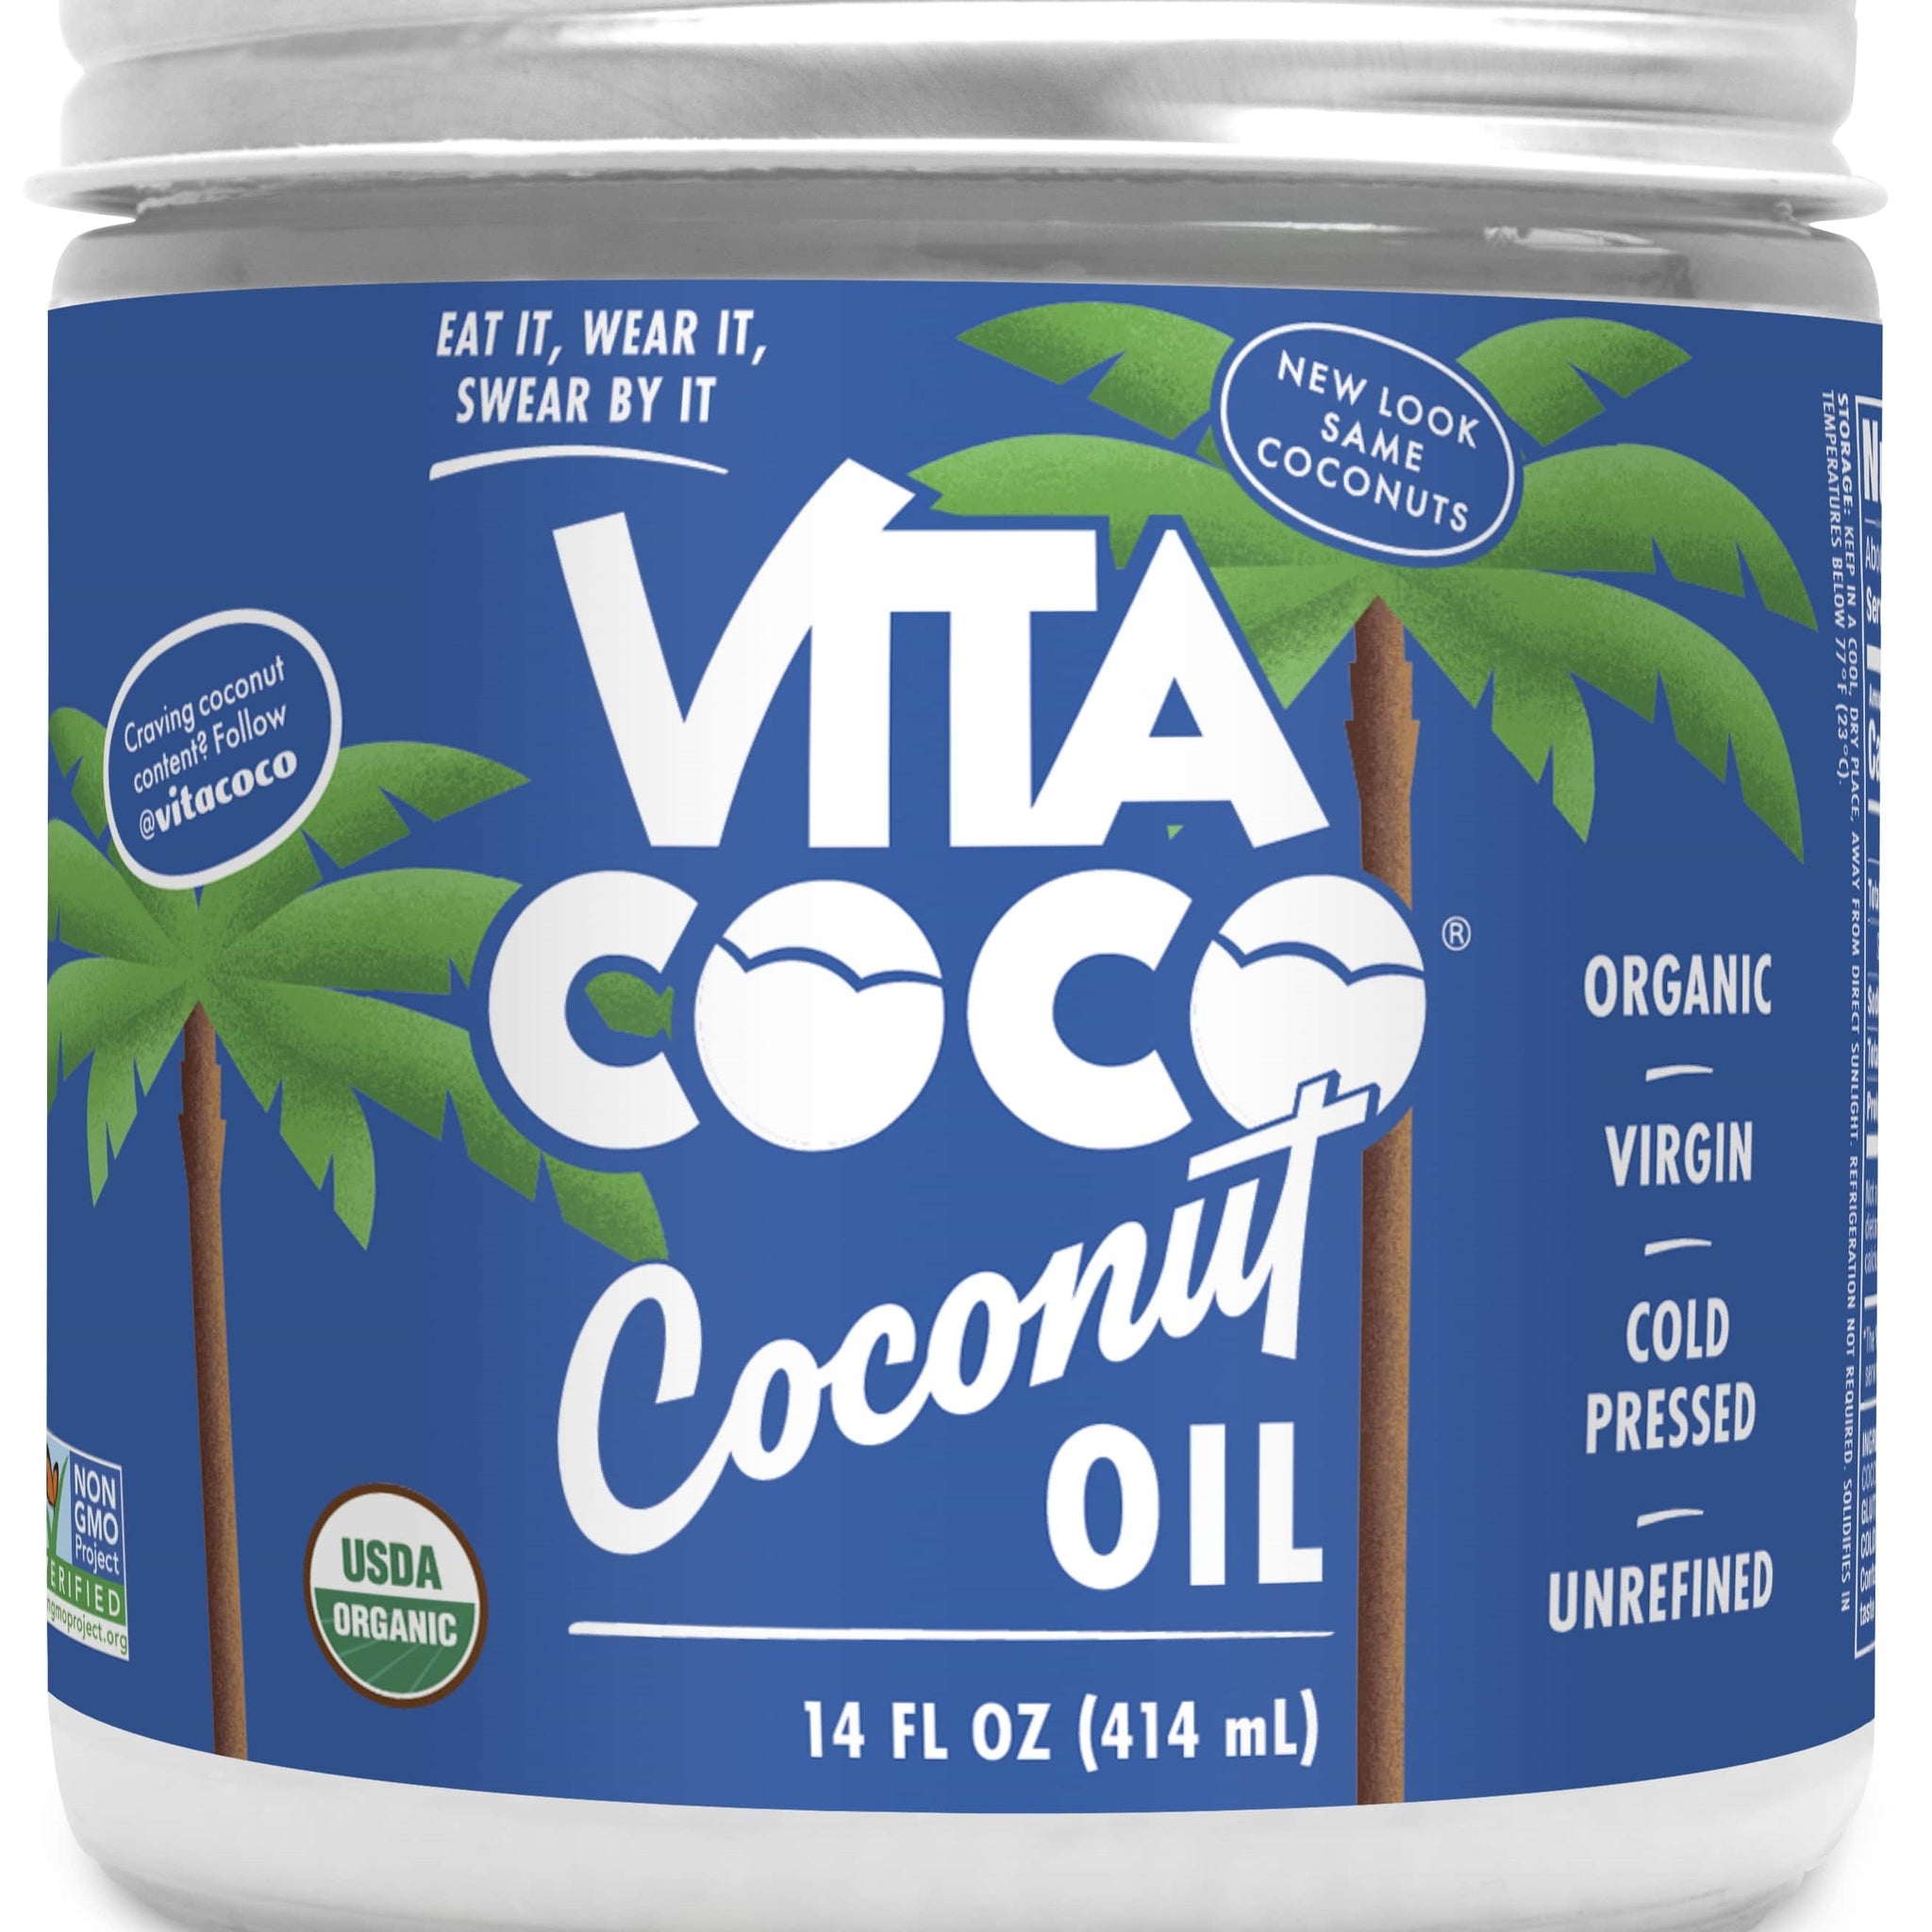 Vita Coco Coconut Oil Glass